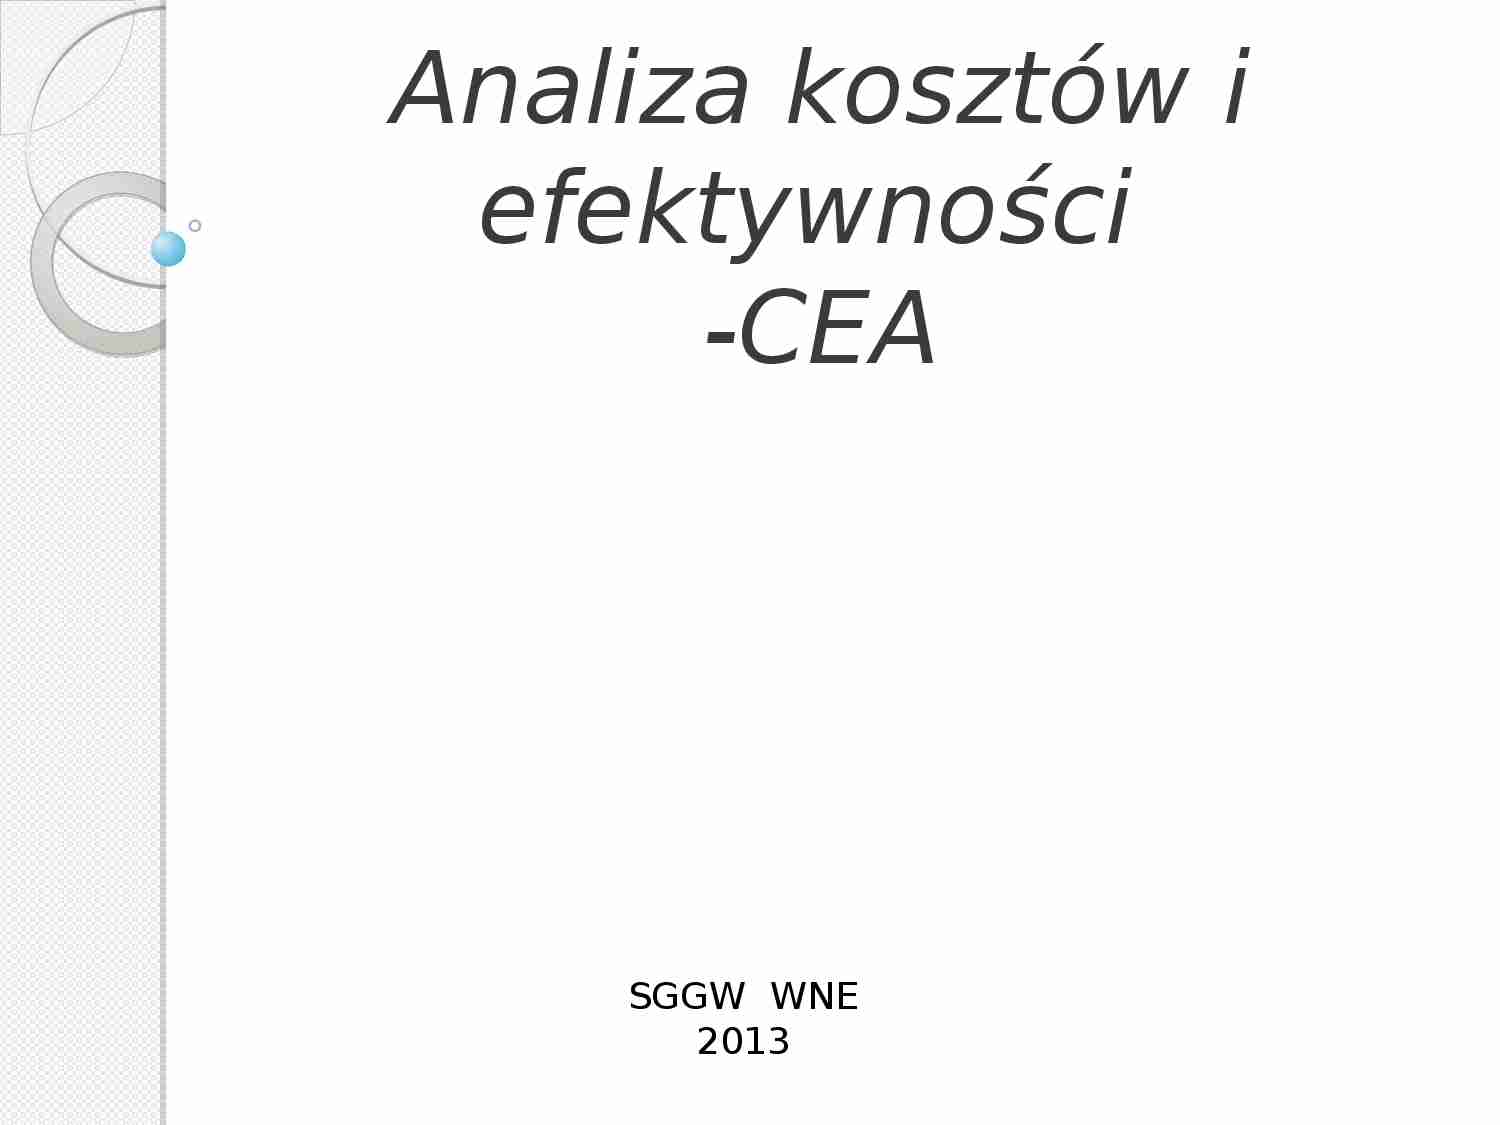 Analiza kosztów i efektywności 0 CEA - strona 1